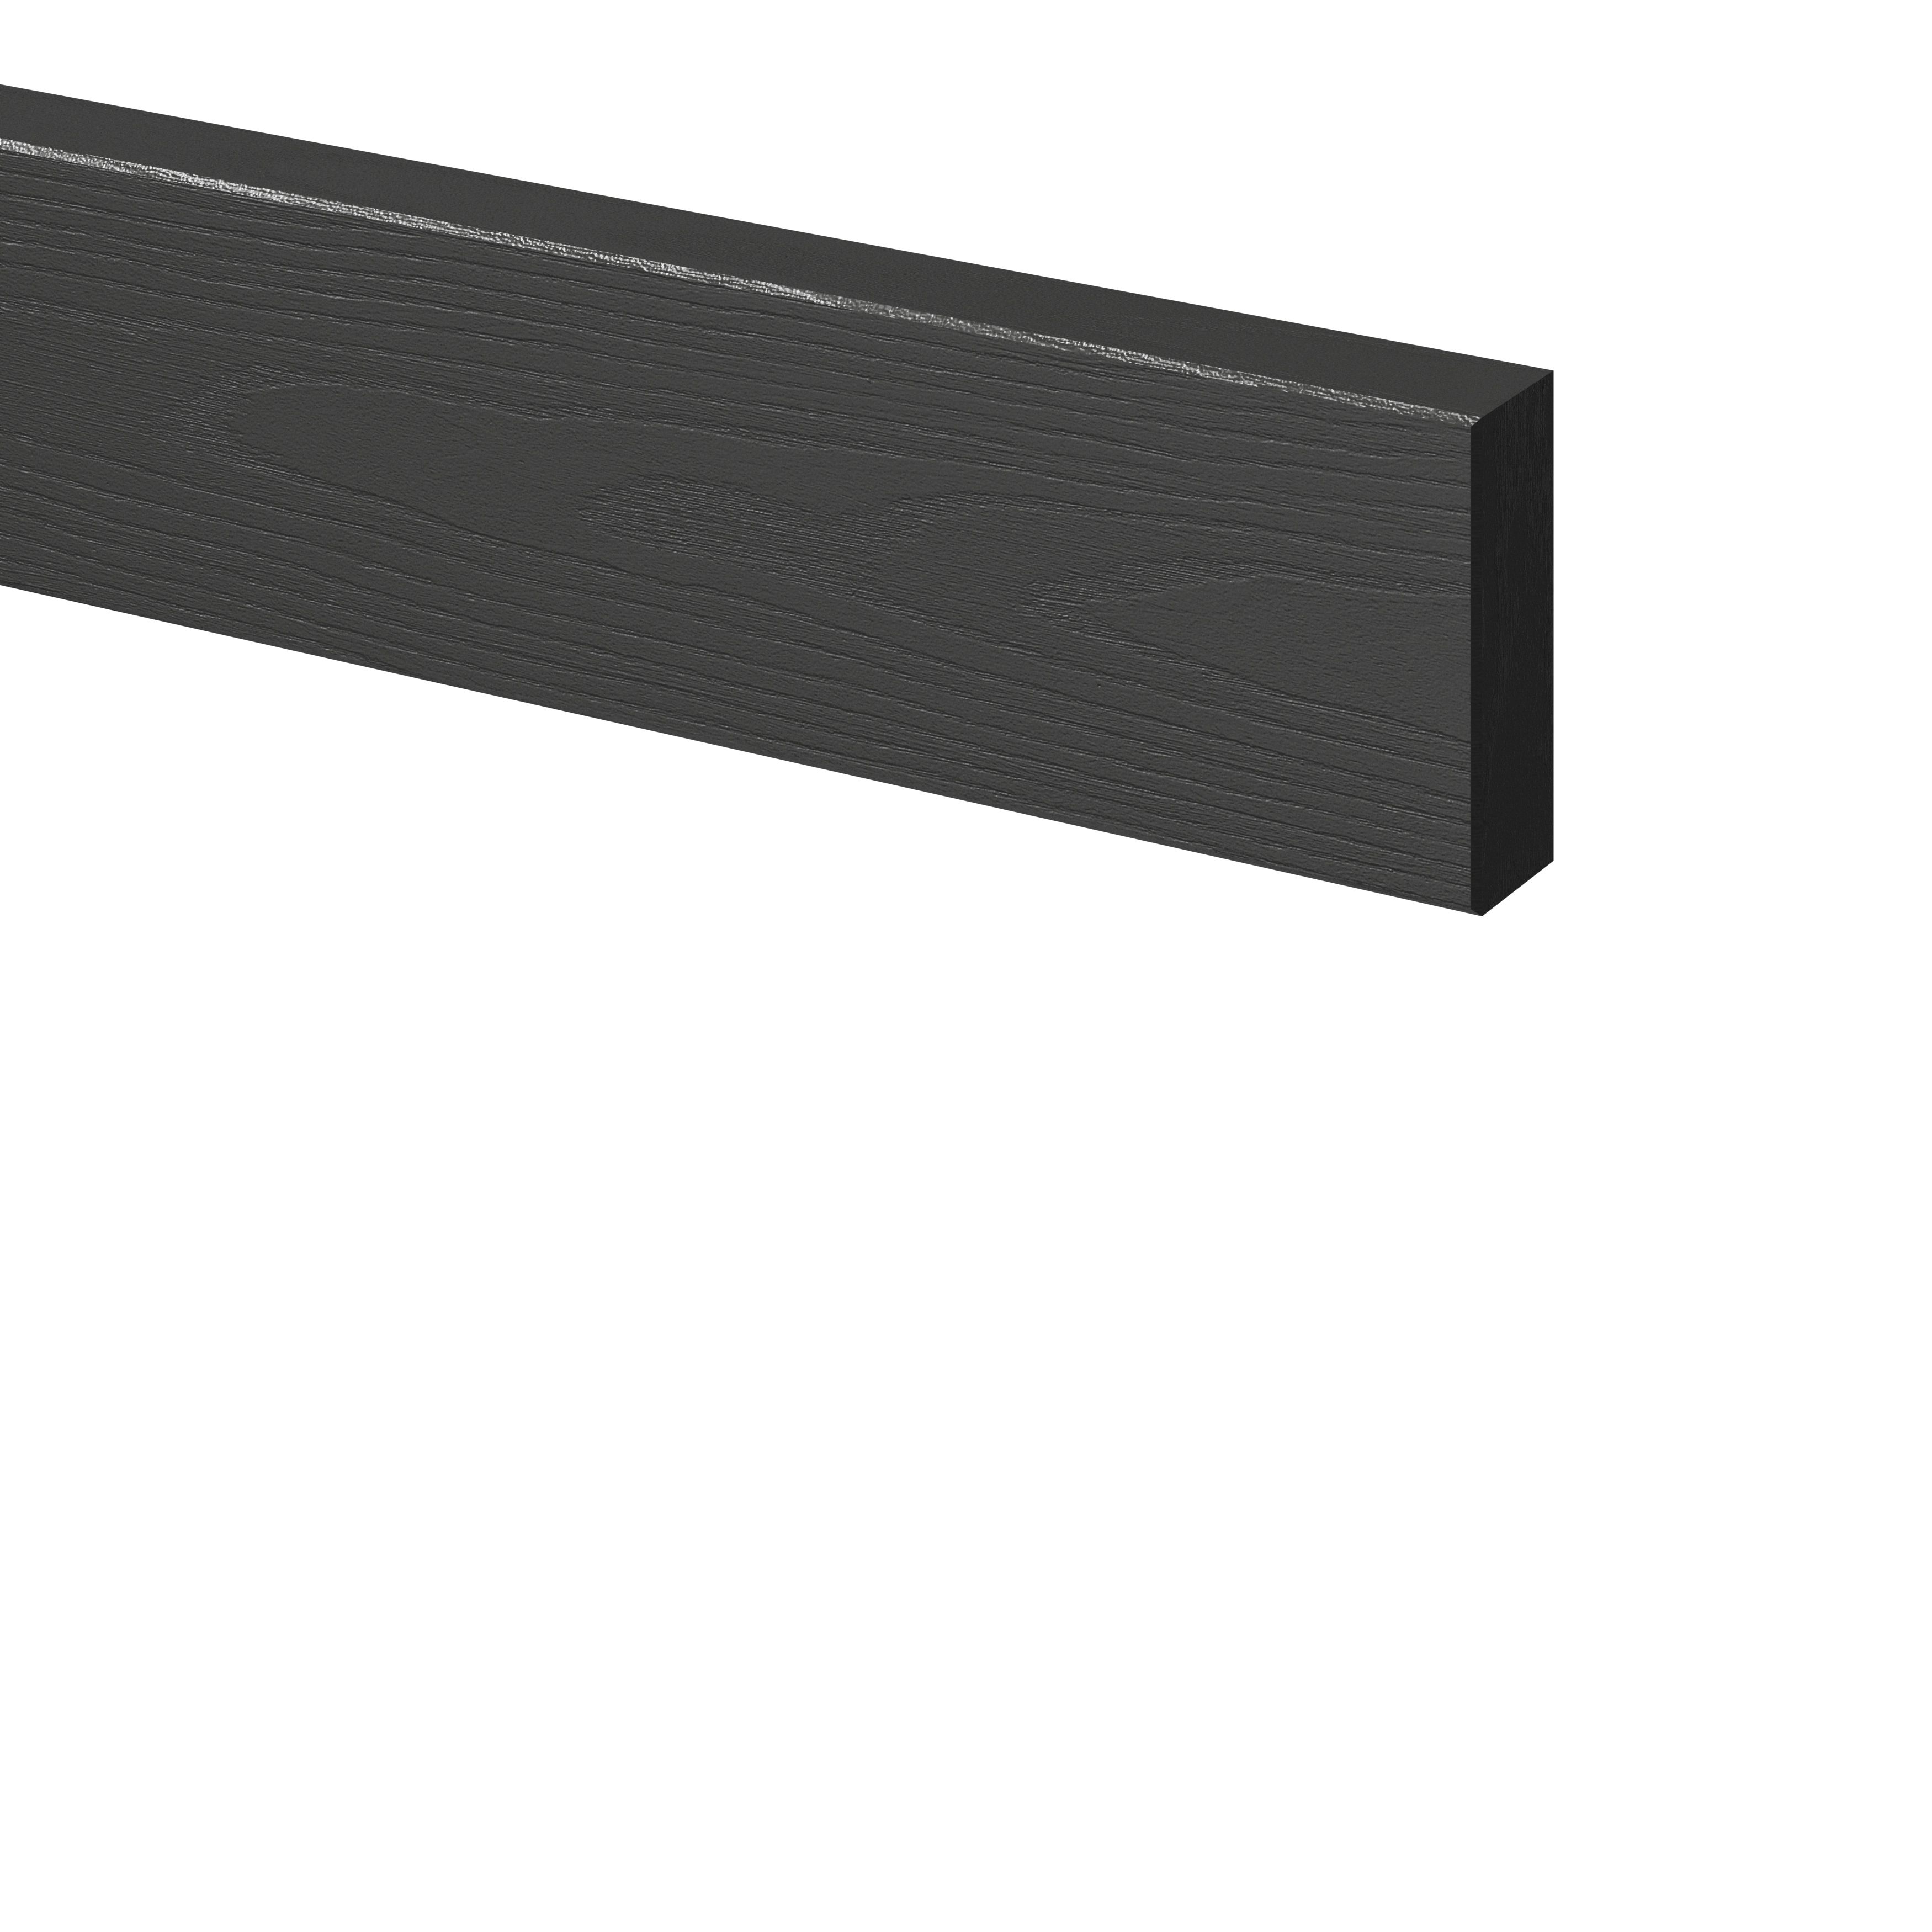 GoodHome Verbena Matt charcoal shaker Standard Appliance Filler panel (H)58mm (W)597mm